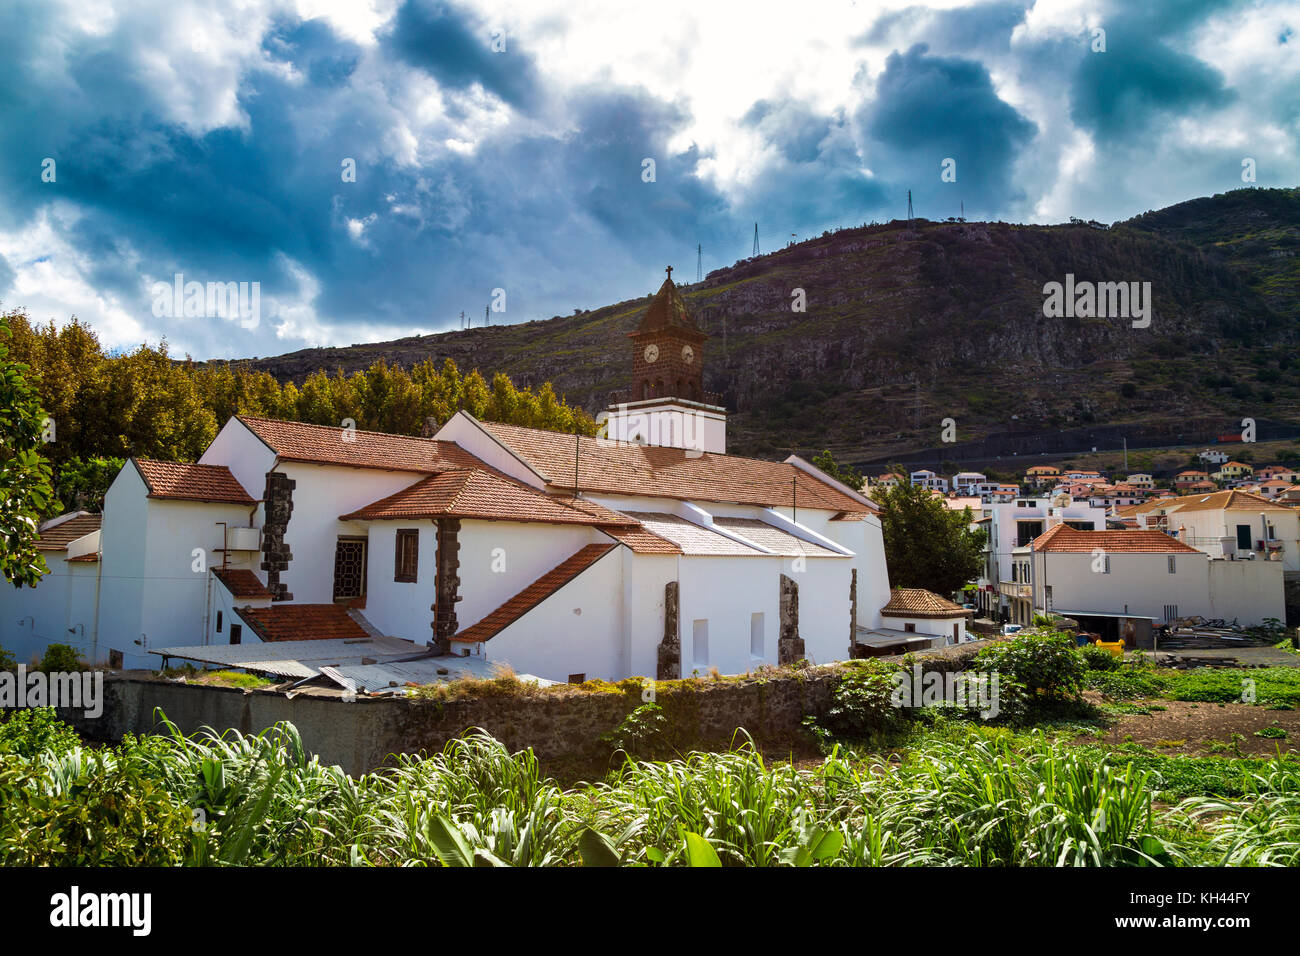 Igreja Da Nossa Senhora Da Conceicao church in Machico, Madeira, Portugal Stock Photo